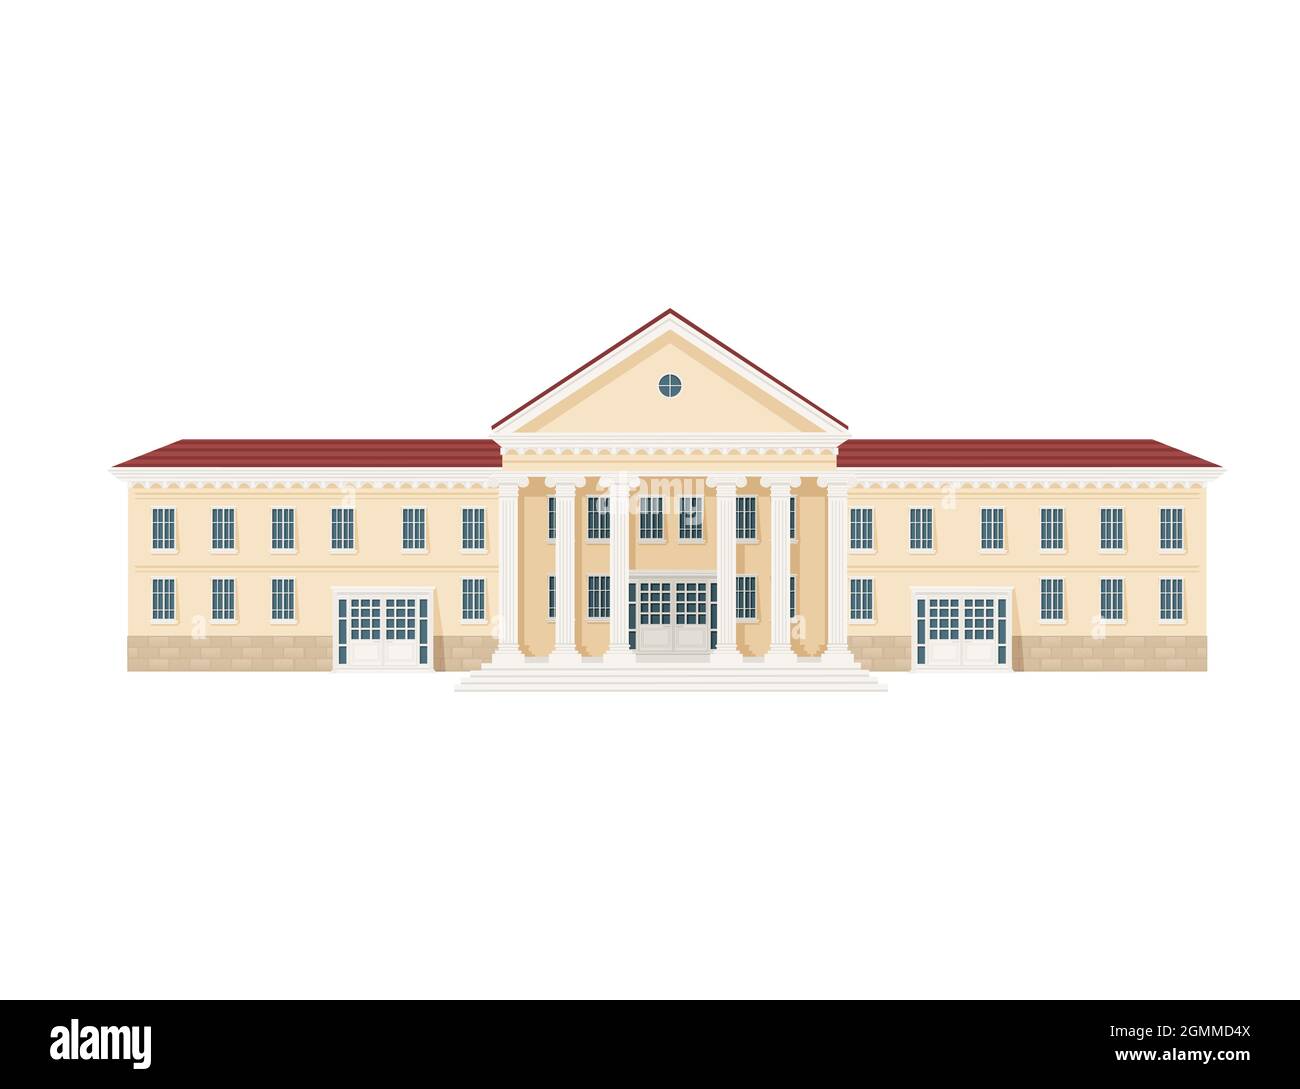 Beige couleur classique architecture américaine bâtiment gouvernemental avec piliers et escaliers illustration vectorielle sur fond blanc Illustration de Vecteur